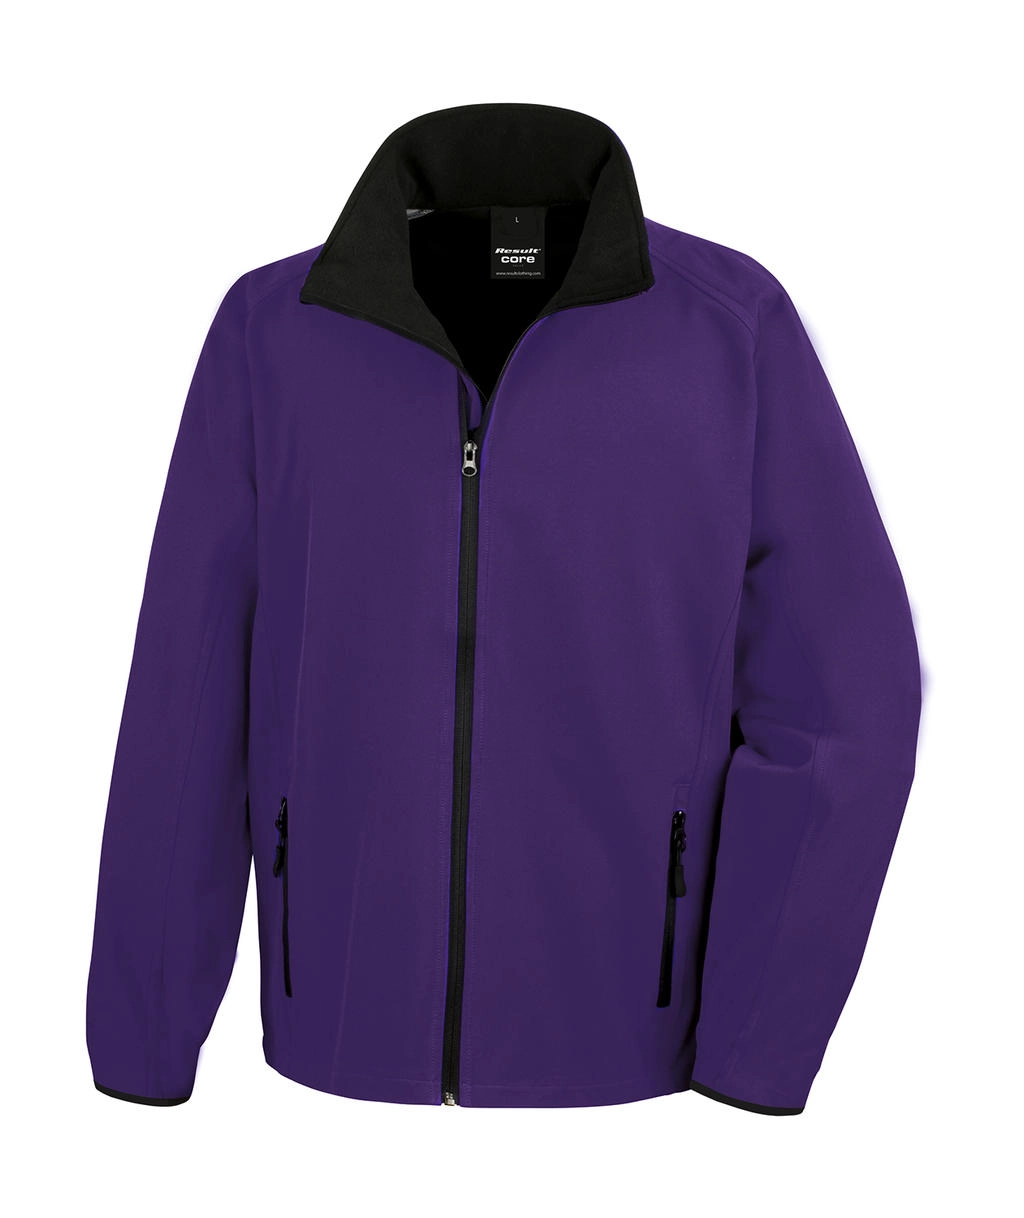 Printable Softshell Jacket zum Besticken und Bedrucken in der Farbe Purple/Black mit Ihren Logo, Schriftzug oder Motiv.